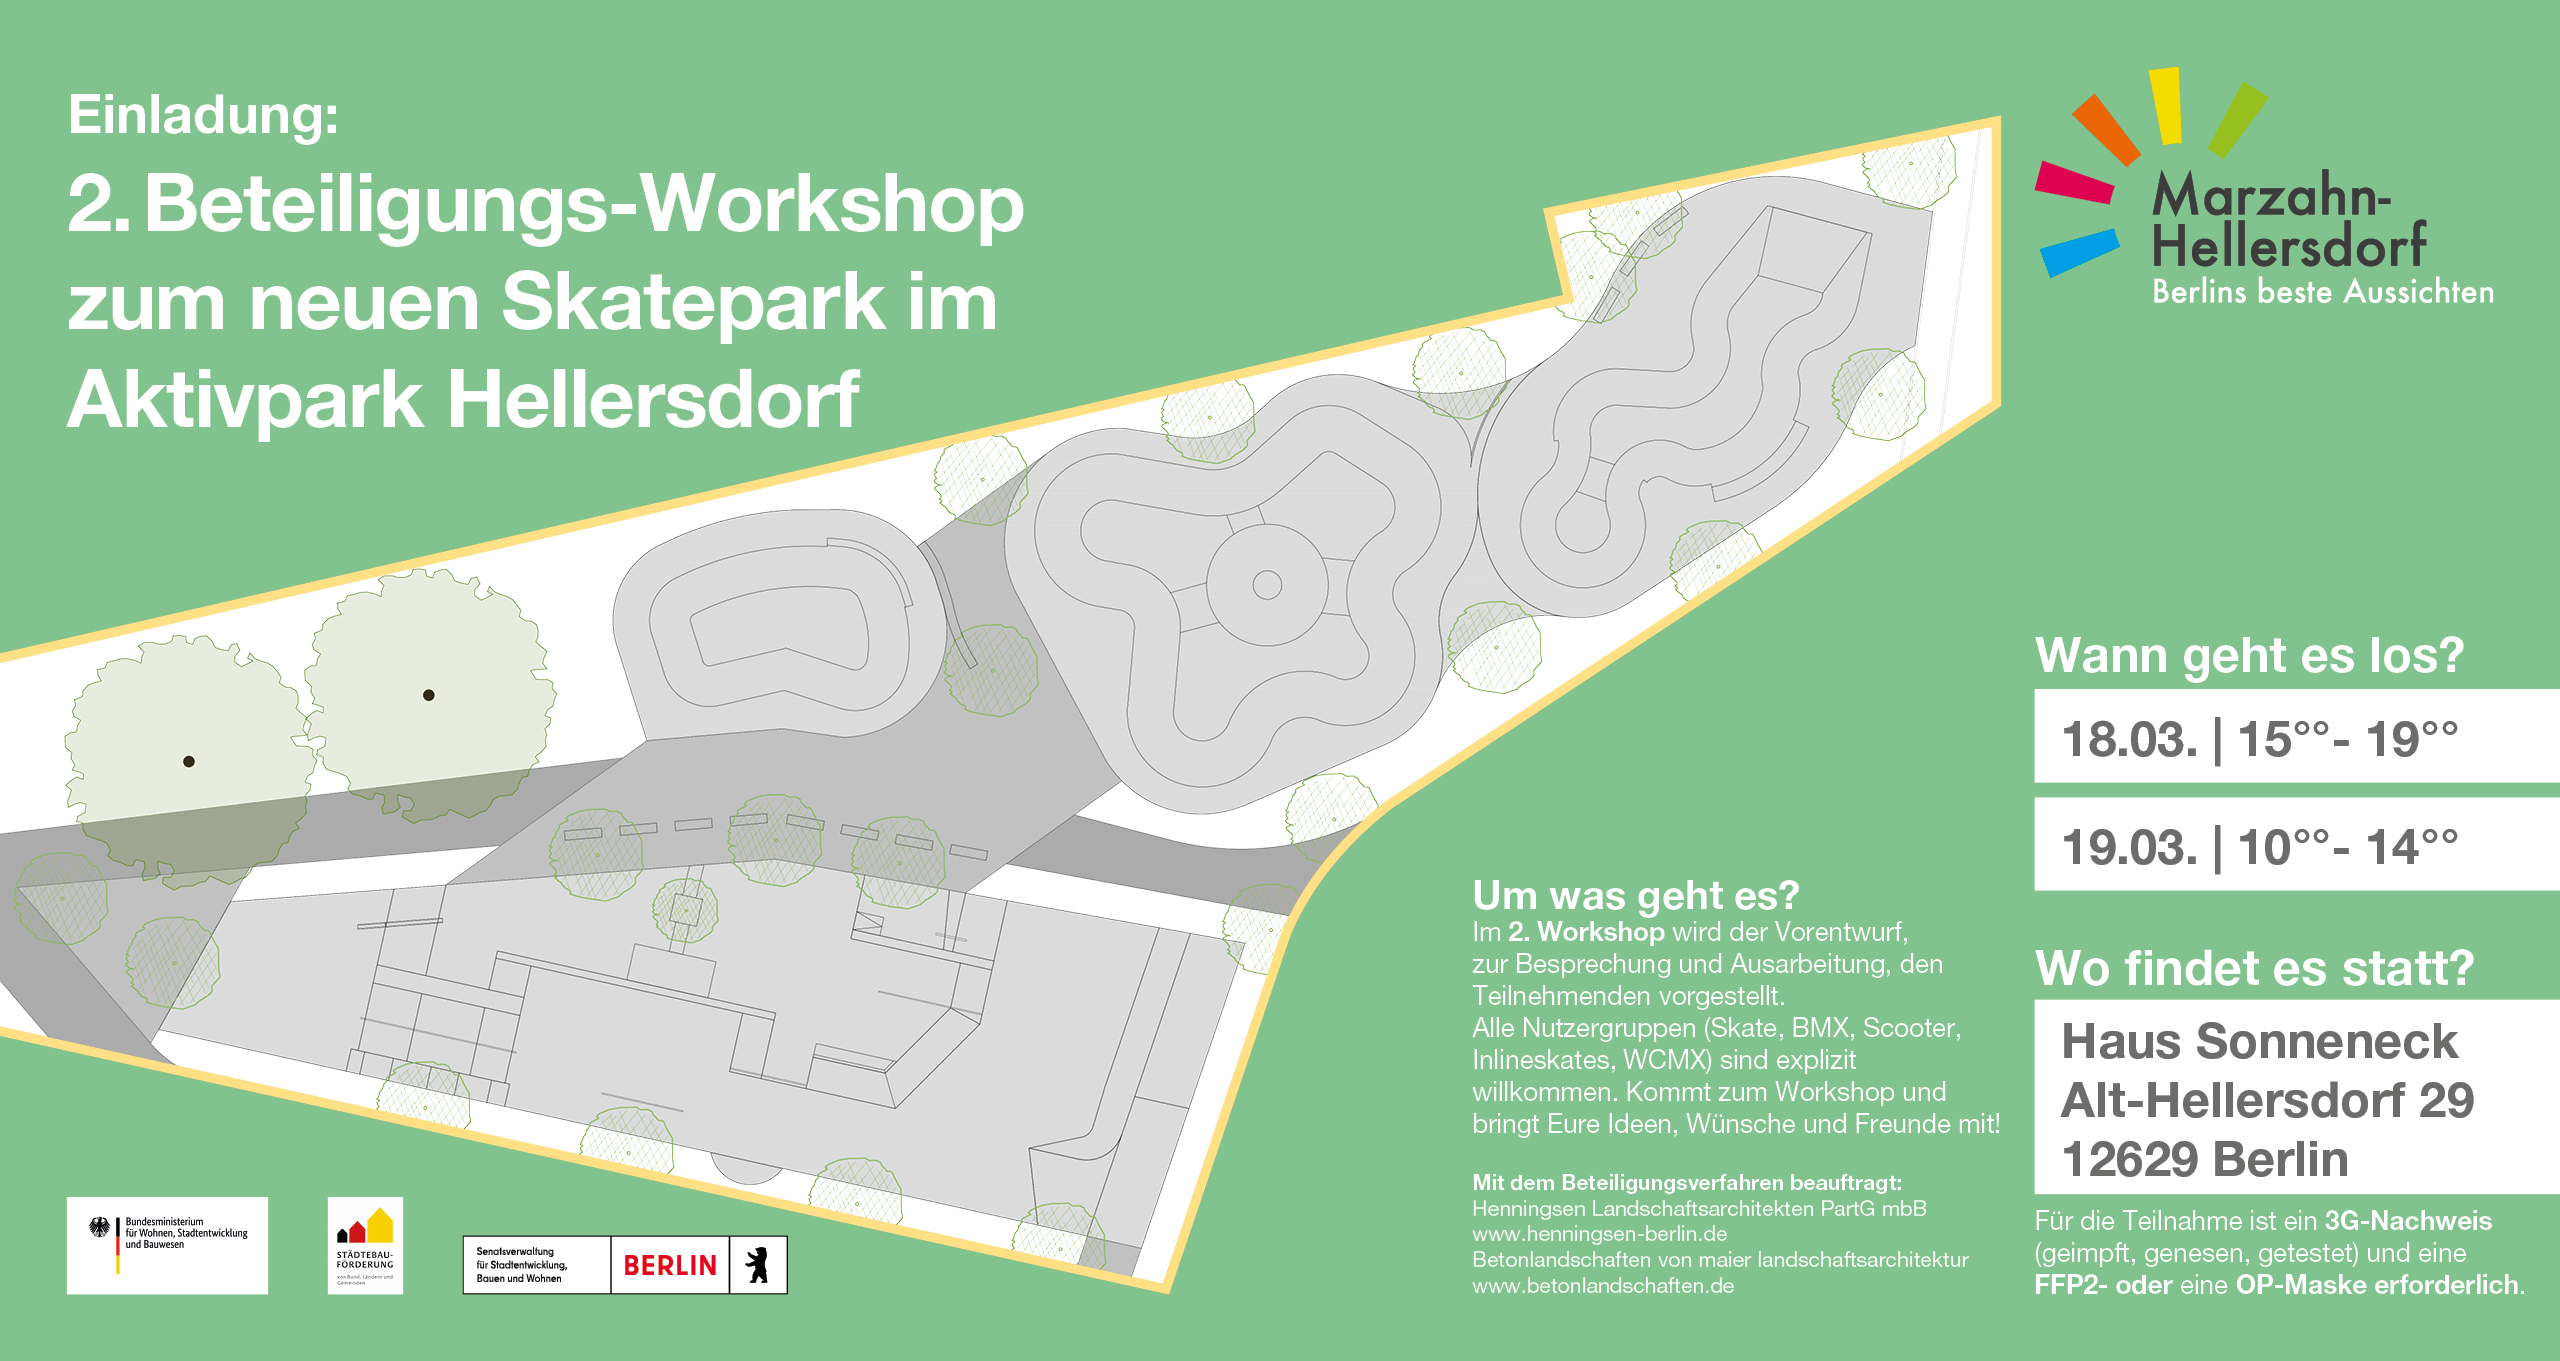 Berlin Marzahn-Hellersdorf - Skateanlage Aktivpark - 2. Beteiligungsworkshop - 18. + 19.03.2022